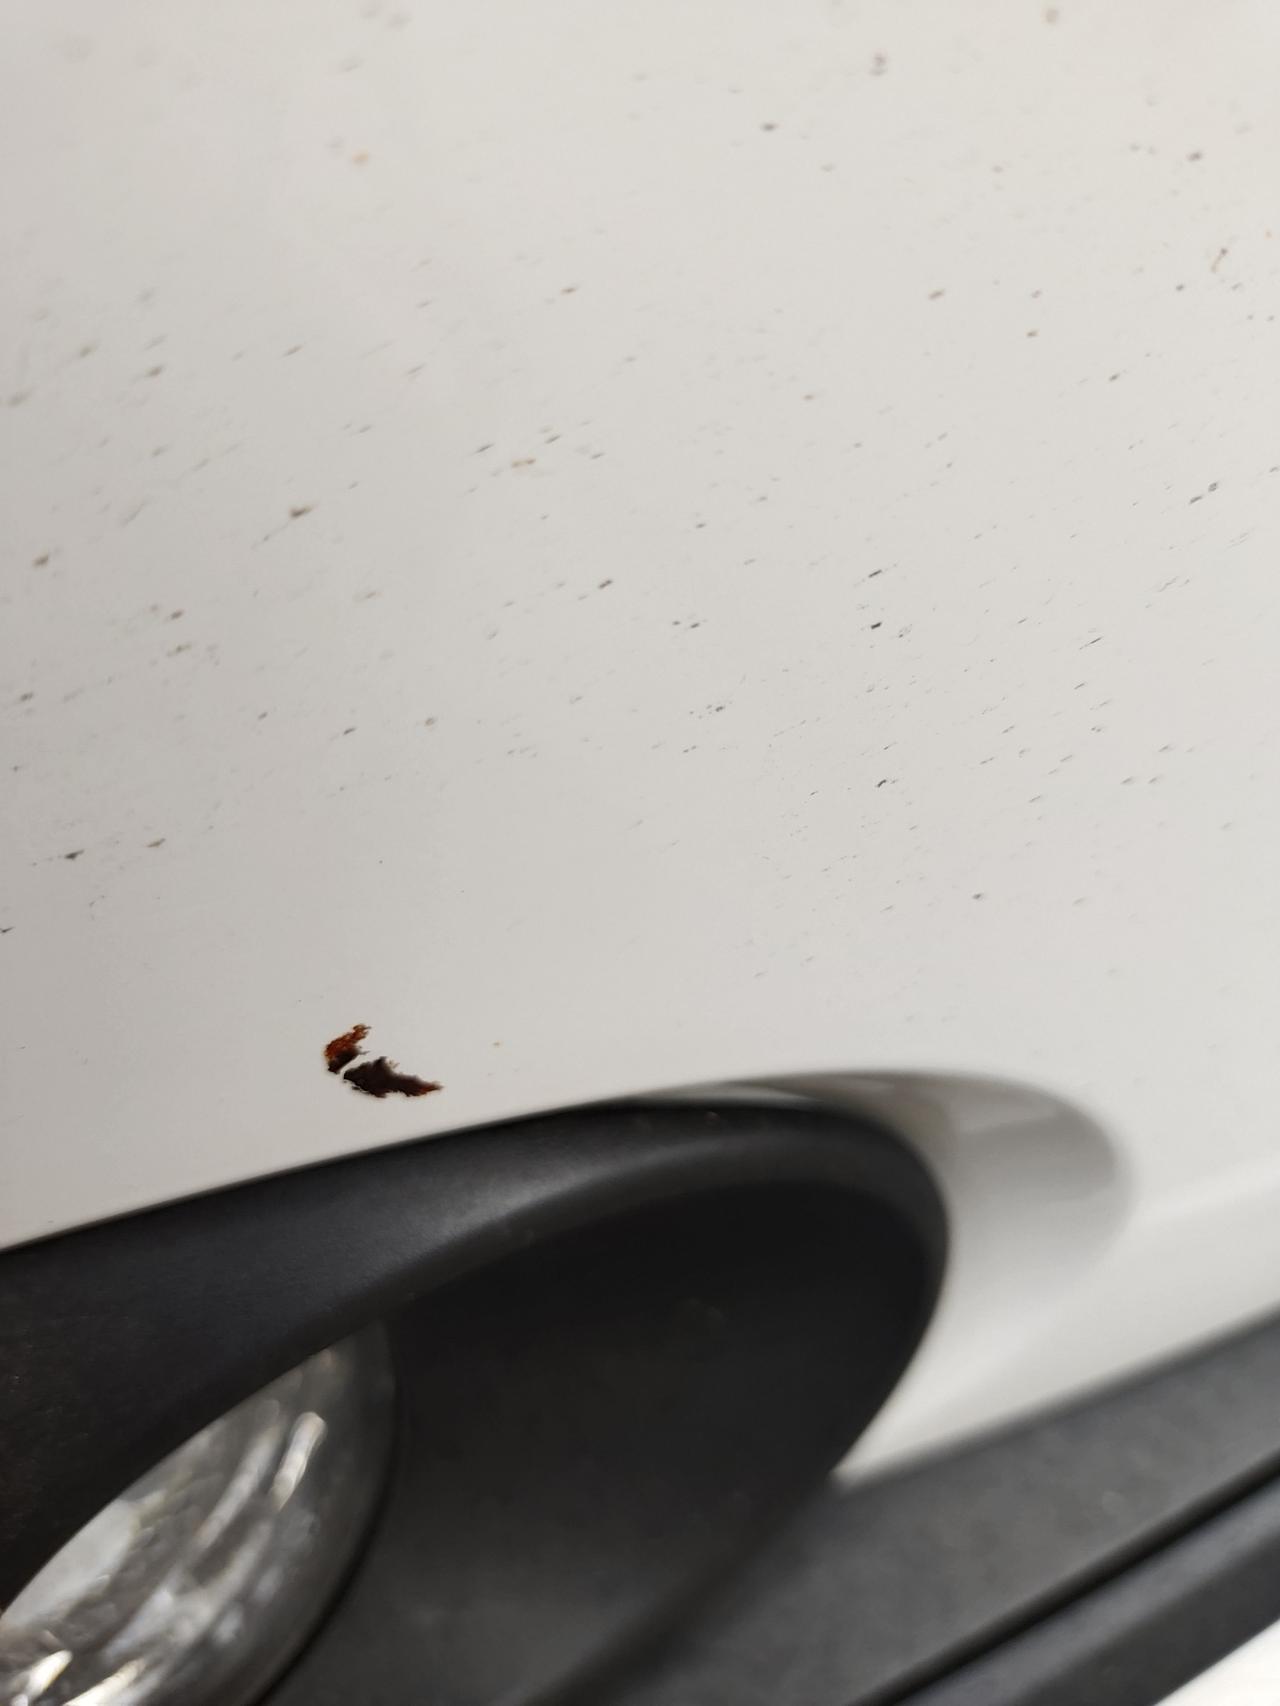 丰田卡罗拉 发现车前脸下边有一个黑色点，好像是掉漆了，这种情况该怎么办？需要去补漆吗